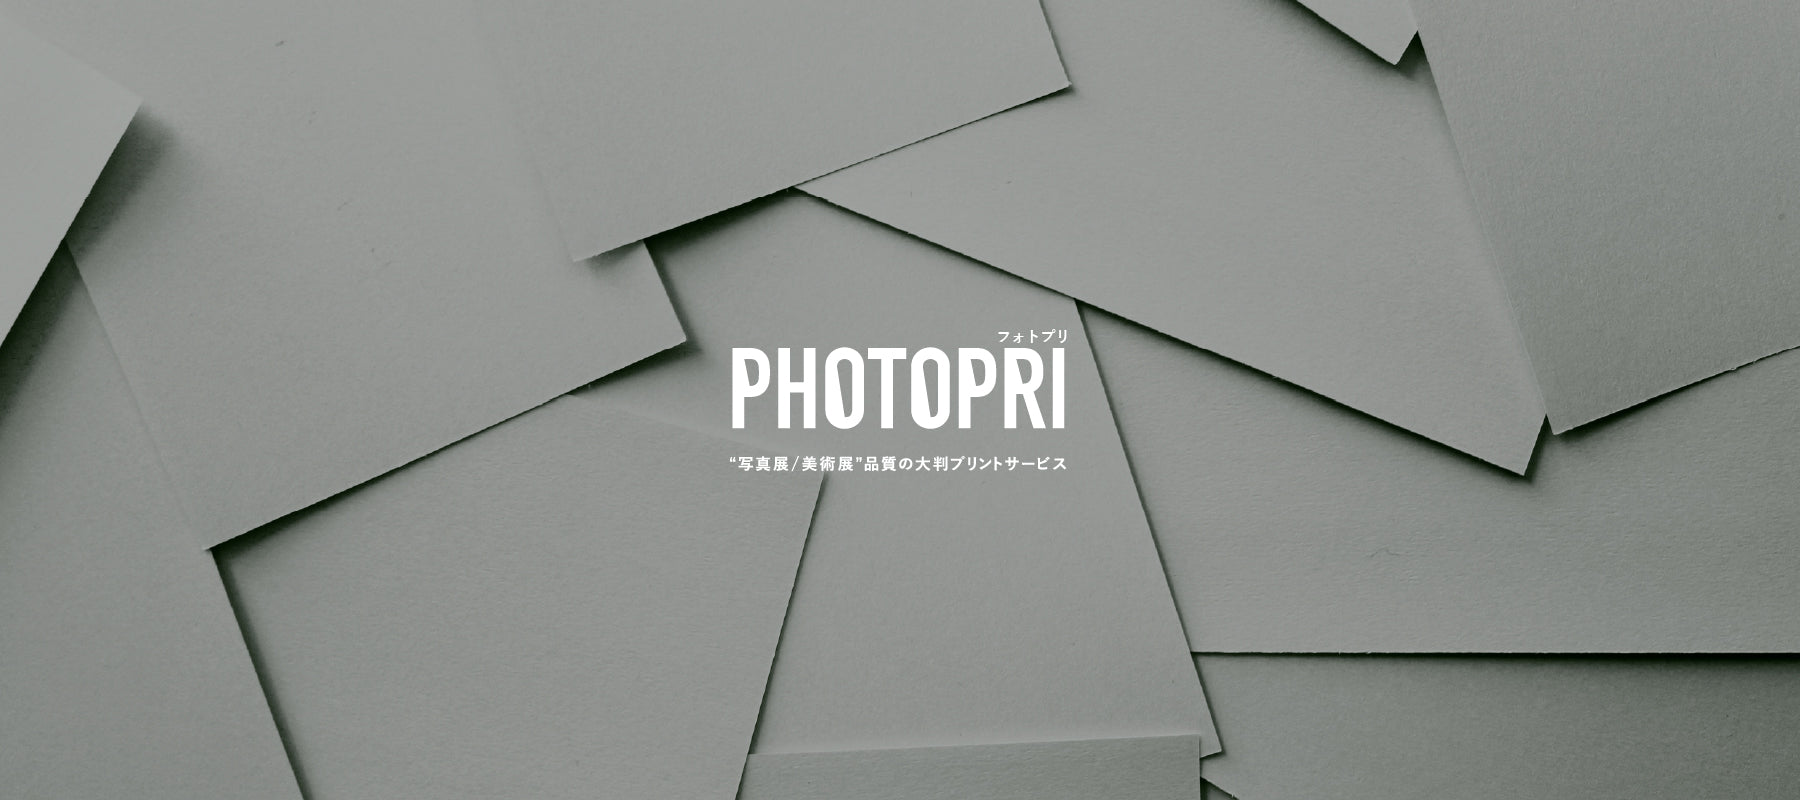 PHOTOPRI【写真展・美術展品質の印刷サービス】